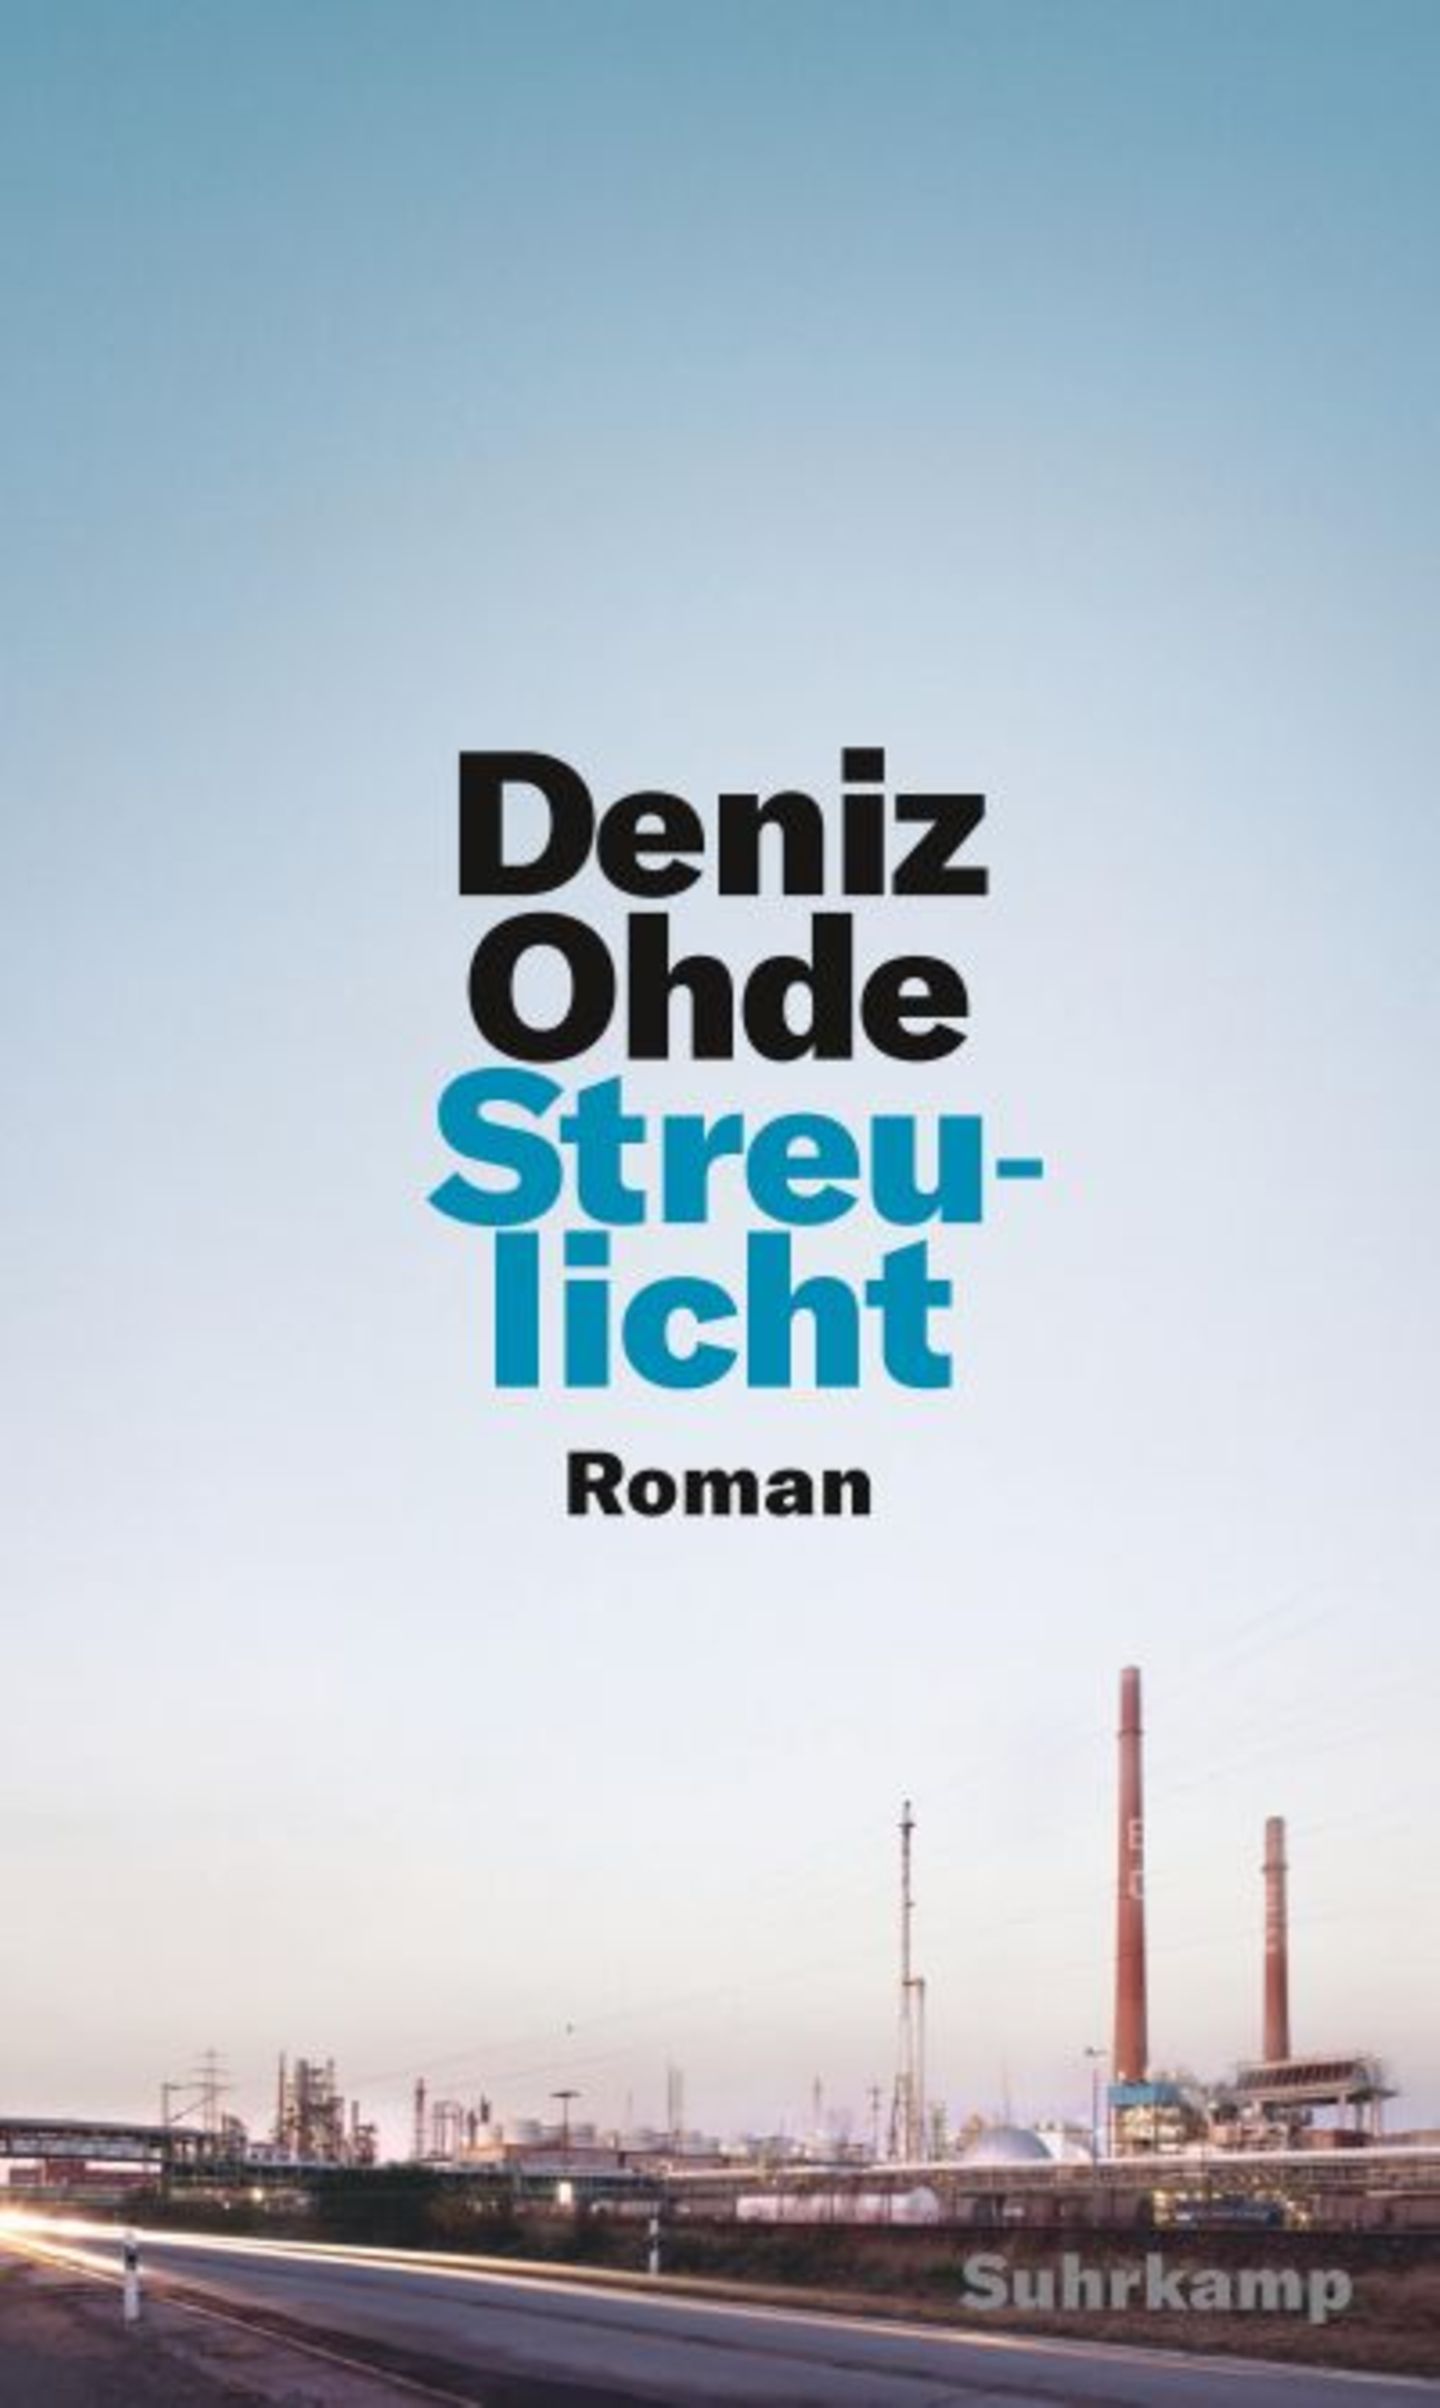 Rassismus in Deutschland ist ein wichtiges und endlich auch ein großes Thema. Dazu passt Deniz Ohdes Debütroman "Streulicht". Er ist wunderbar geschrieben und ergründet die subtilen und dennoch wirkmächtigen Facetten der Ausgrenzung von Einwanderer:innen, die jenseits offener Feindseligkeit stattfindet. Die Ich-Erzählerin leidet unter den oft unausgesprochenen Zuschreibungen als migrantisches Arbeiterkind und an der Kluft zwischen Bildungsversprechen und erfahrener Ungleichheit. Nach und nach versucht sie, sich von der verinnerlichten Abwertung ihrer Person durch die Mehrheitsgesellschaft zu befreien. Das berührende Debüt, das mit dem Literaturpreis der Jürgen-Ponto-Stiftung ausgezeichnet wurde, möchte ich meiner Nichte, die Grundschullehramt studiert, unter den Weihnachtsbaum legen.    Susanne